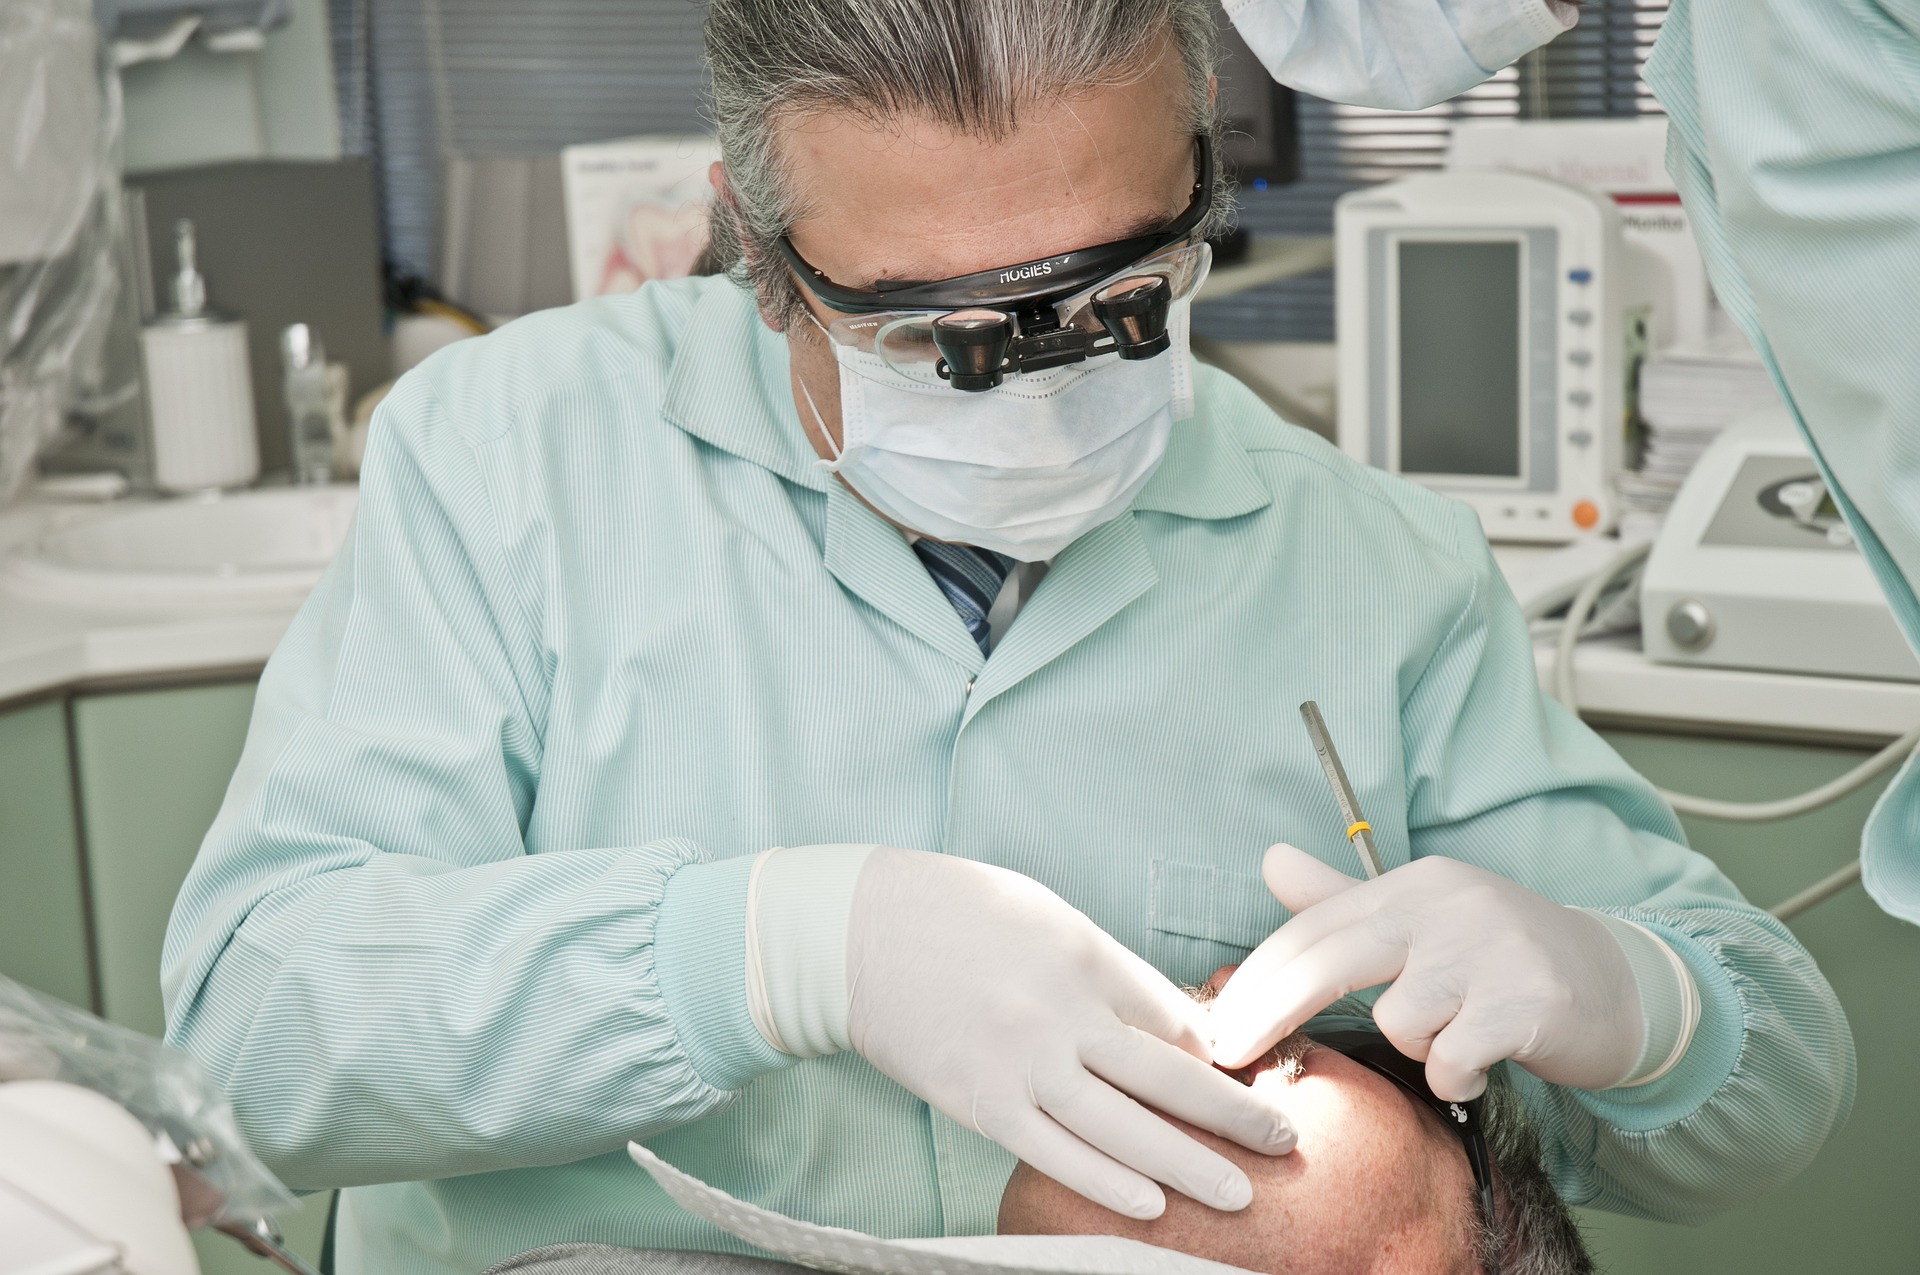 Czy implanty zębowe mogą być wykorzystane do zastąpienia wszystkich zębów? Jakie są alternatywne rozwiązania w przypadku braku większej liczby zębów?